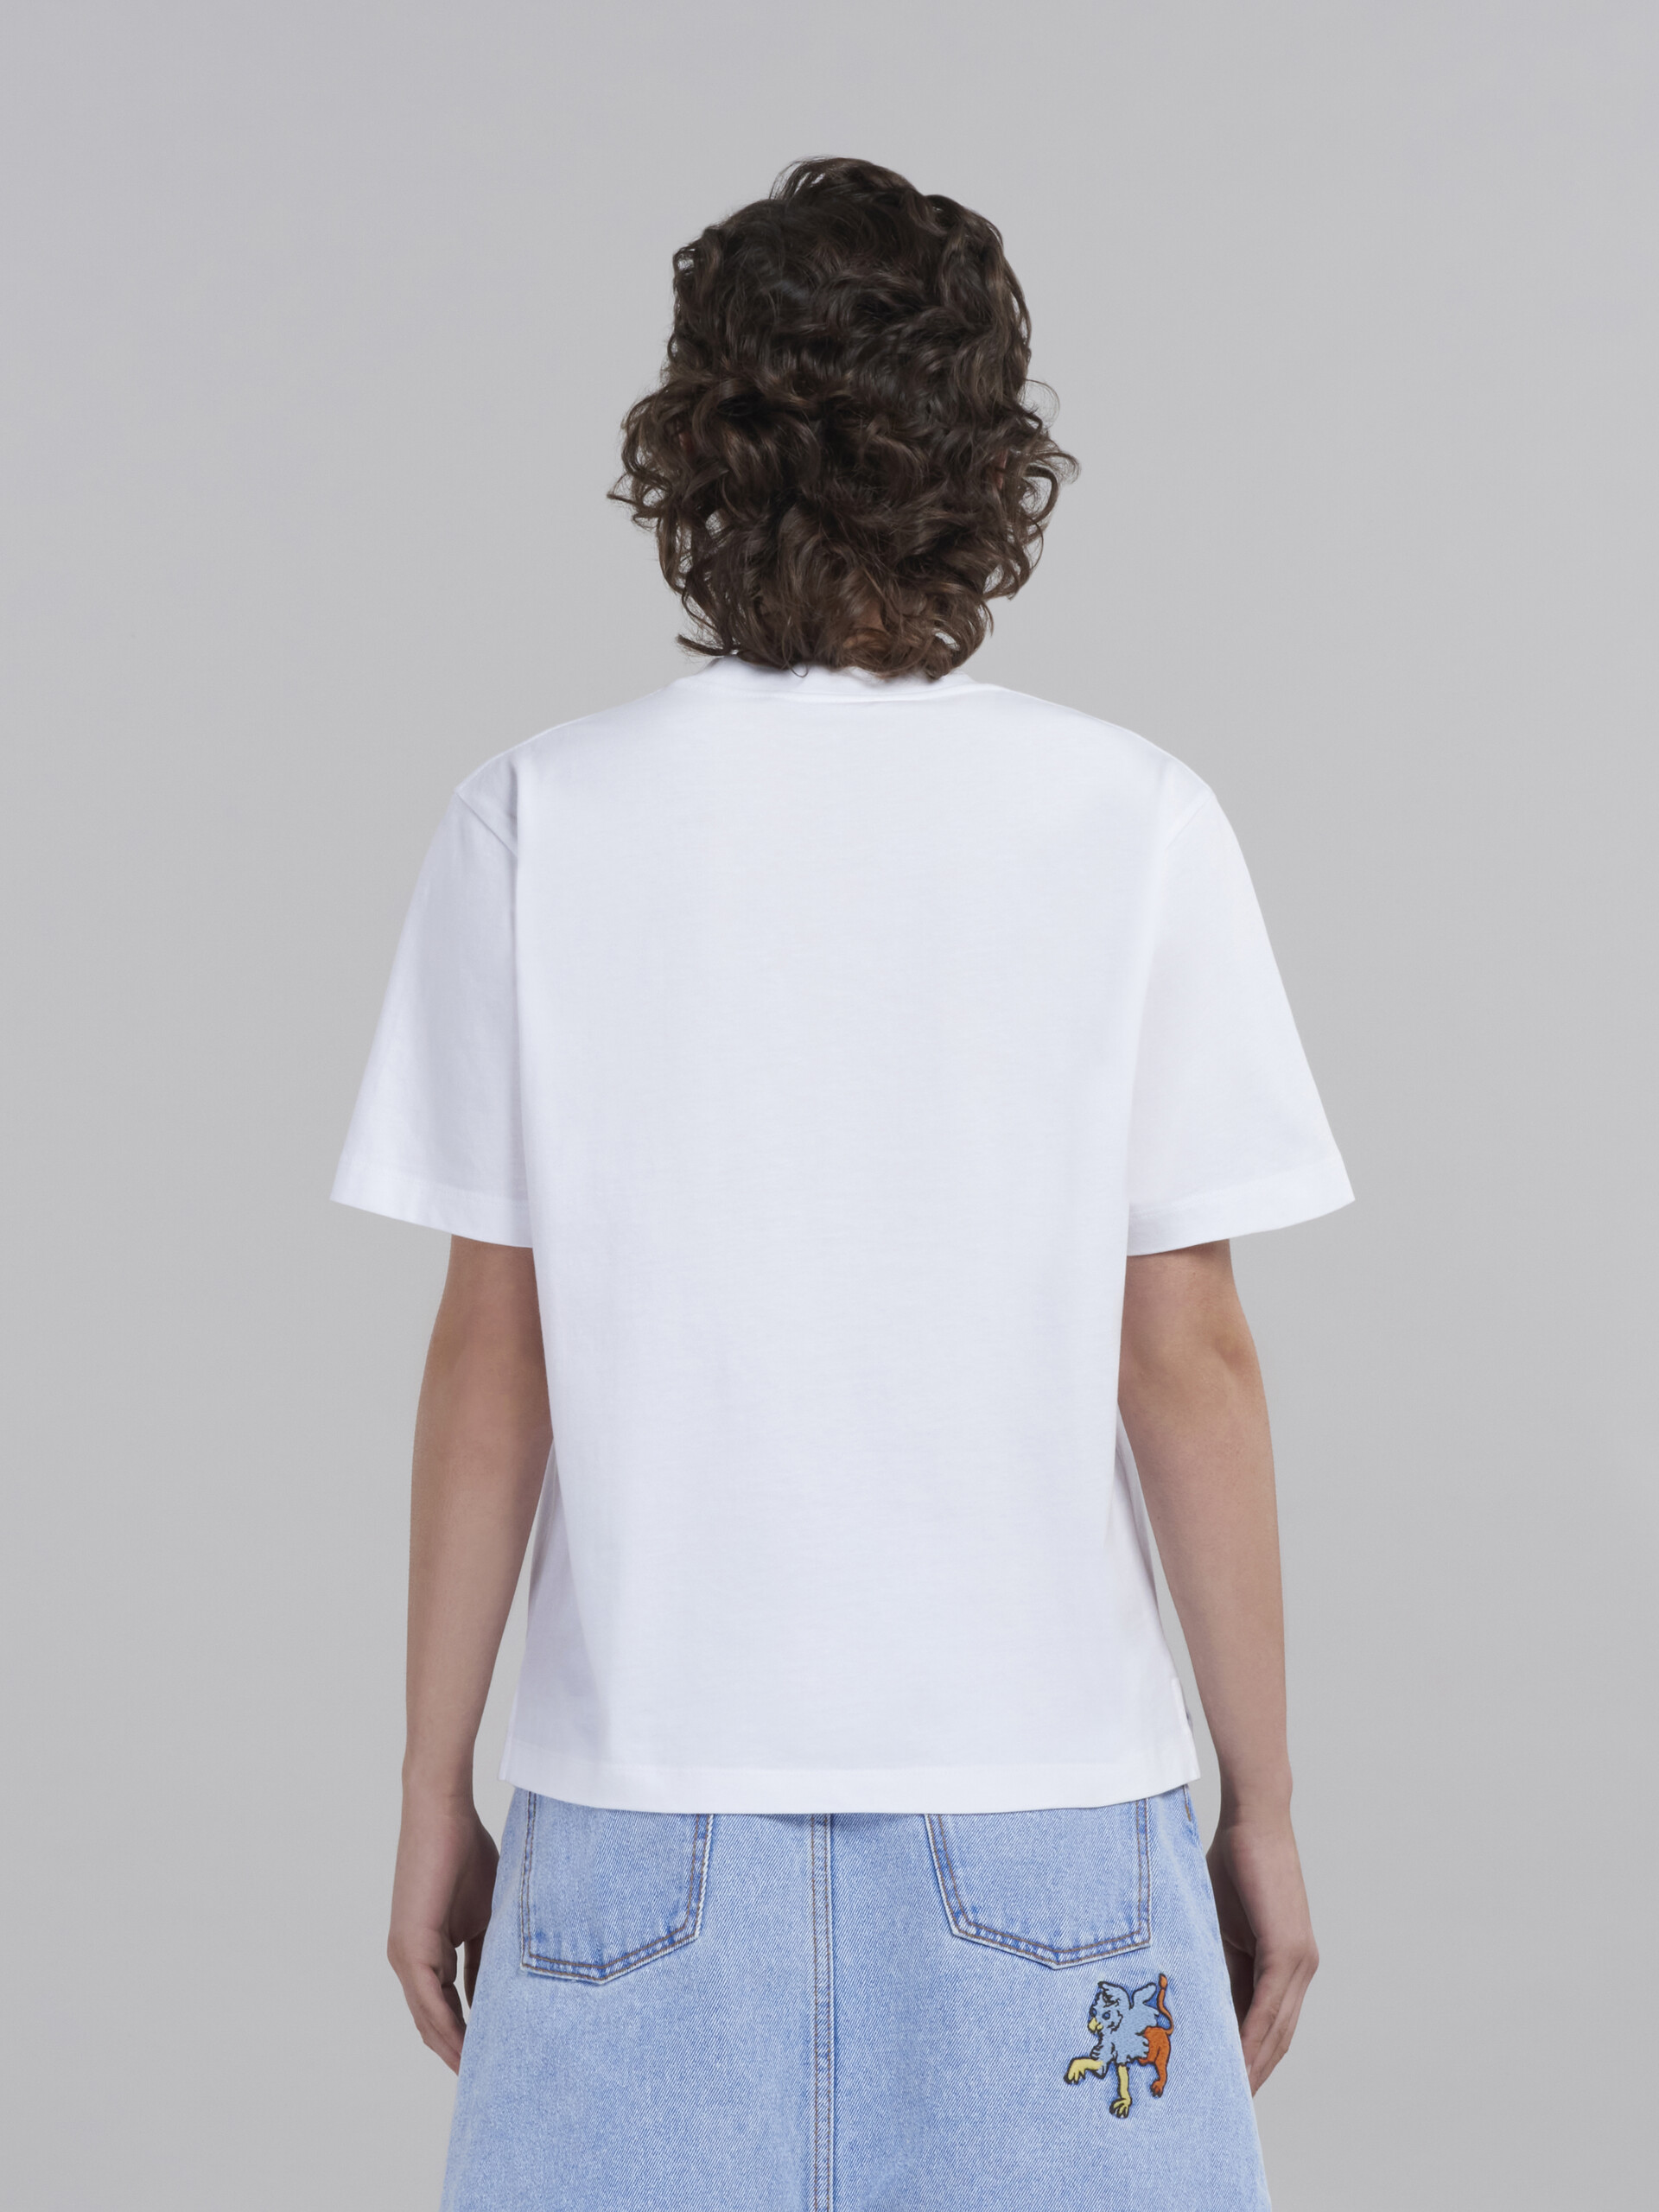 オーガニックコットン製Tシャツ3枚セット - Tシャツ - Image 3